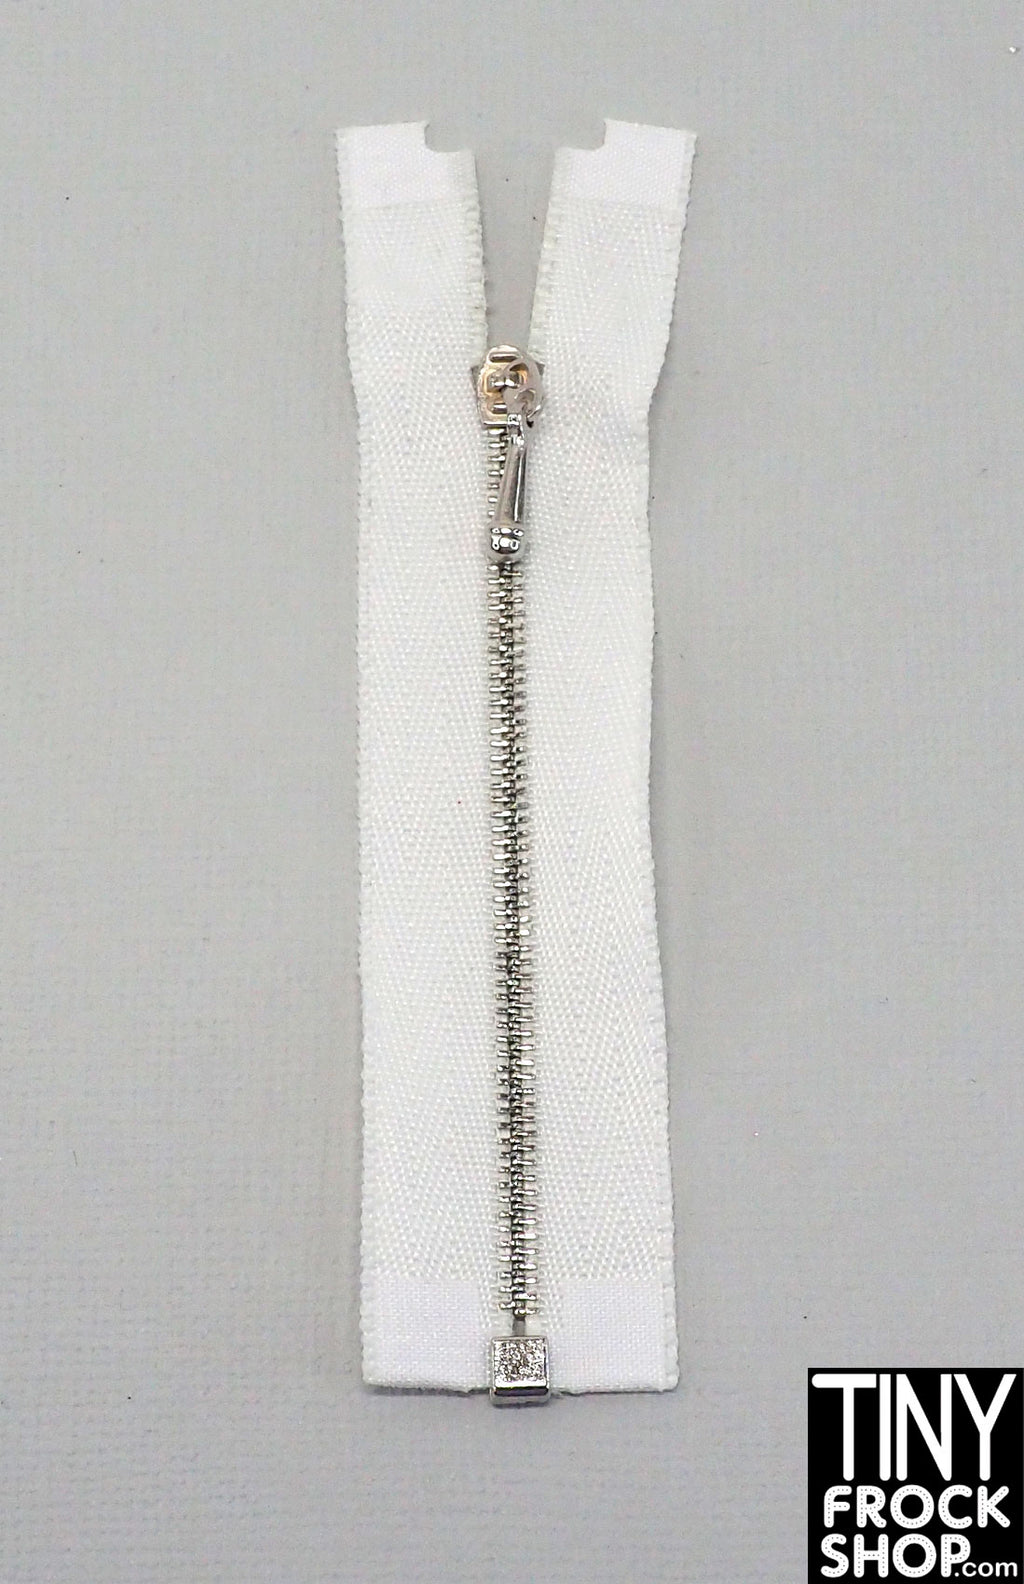 1 Piece Zipper 30 Open End Metallic Silver Sturdy Extra Long Zipper